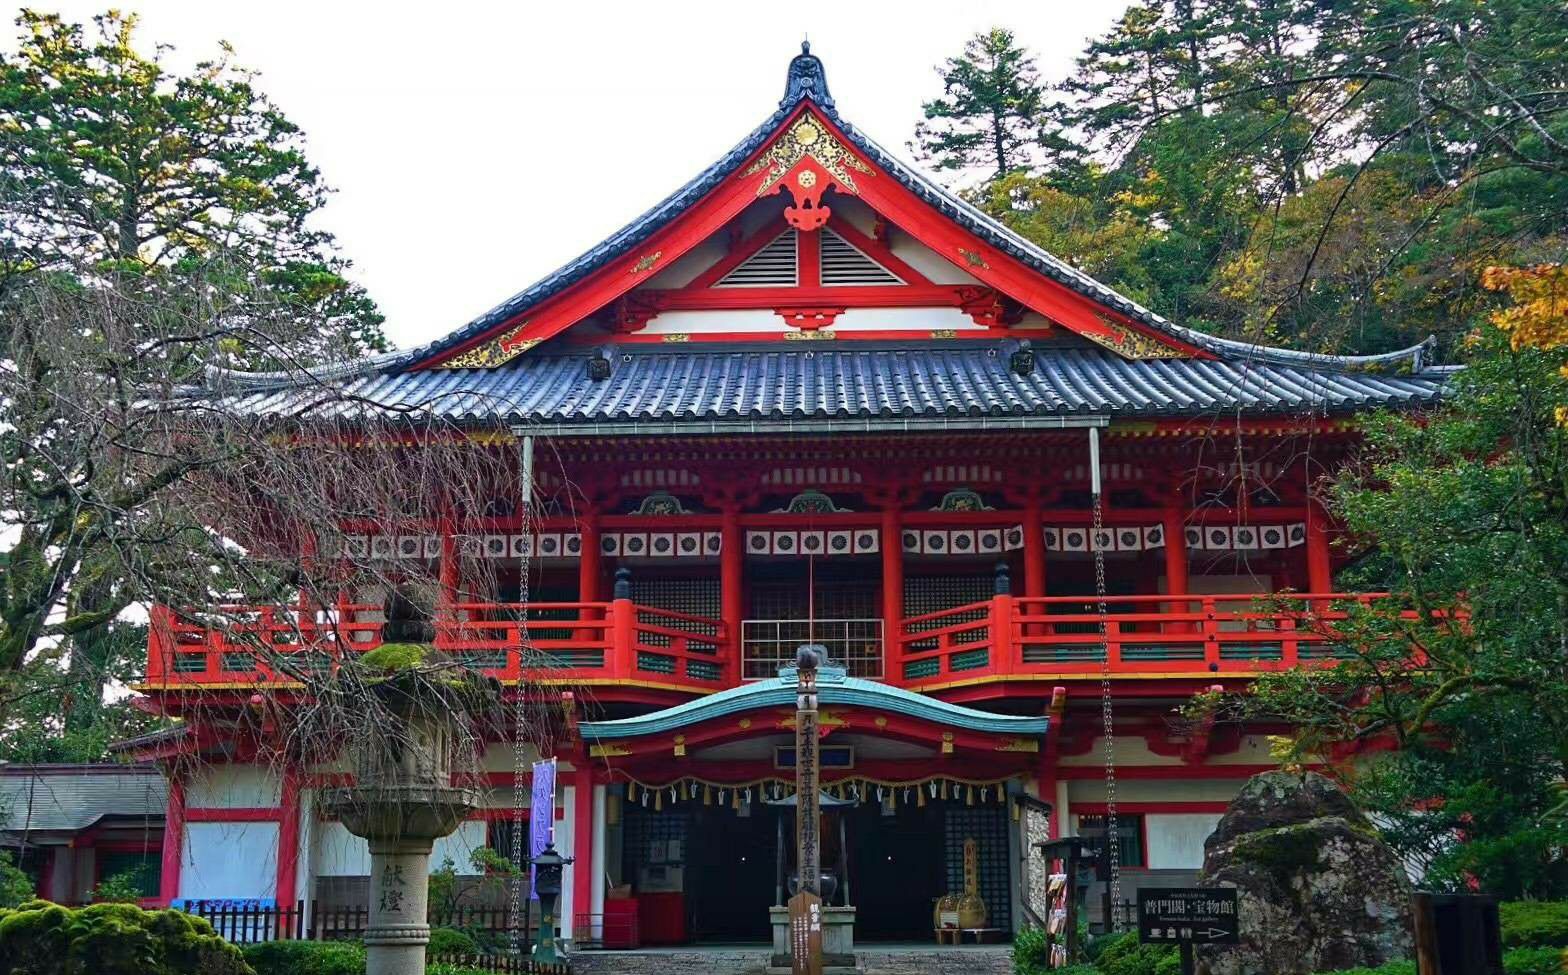 日本的寺院没有大雄宝殿，也不讲究对称的寺院建筑格式，寺院依山而建，主殿位于入口处，供奉着观世音菩萨，